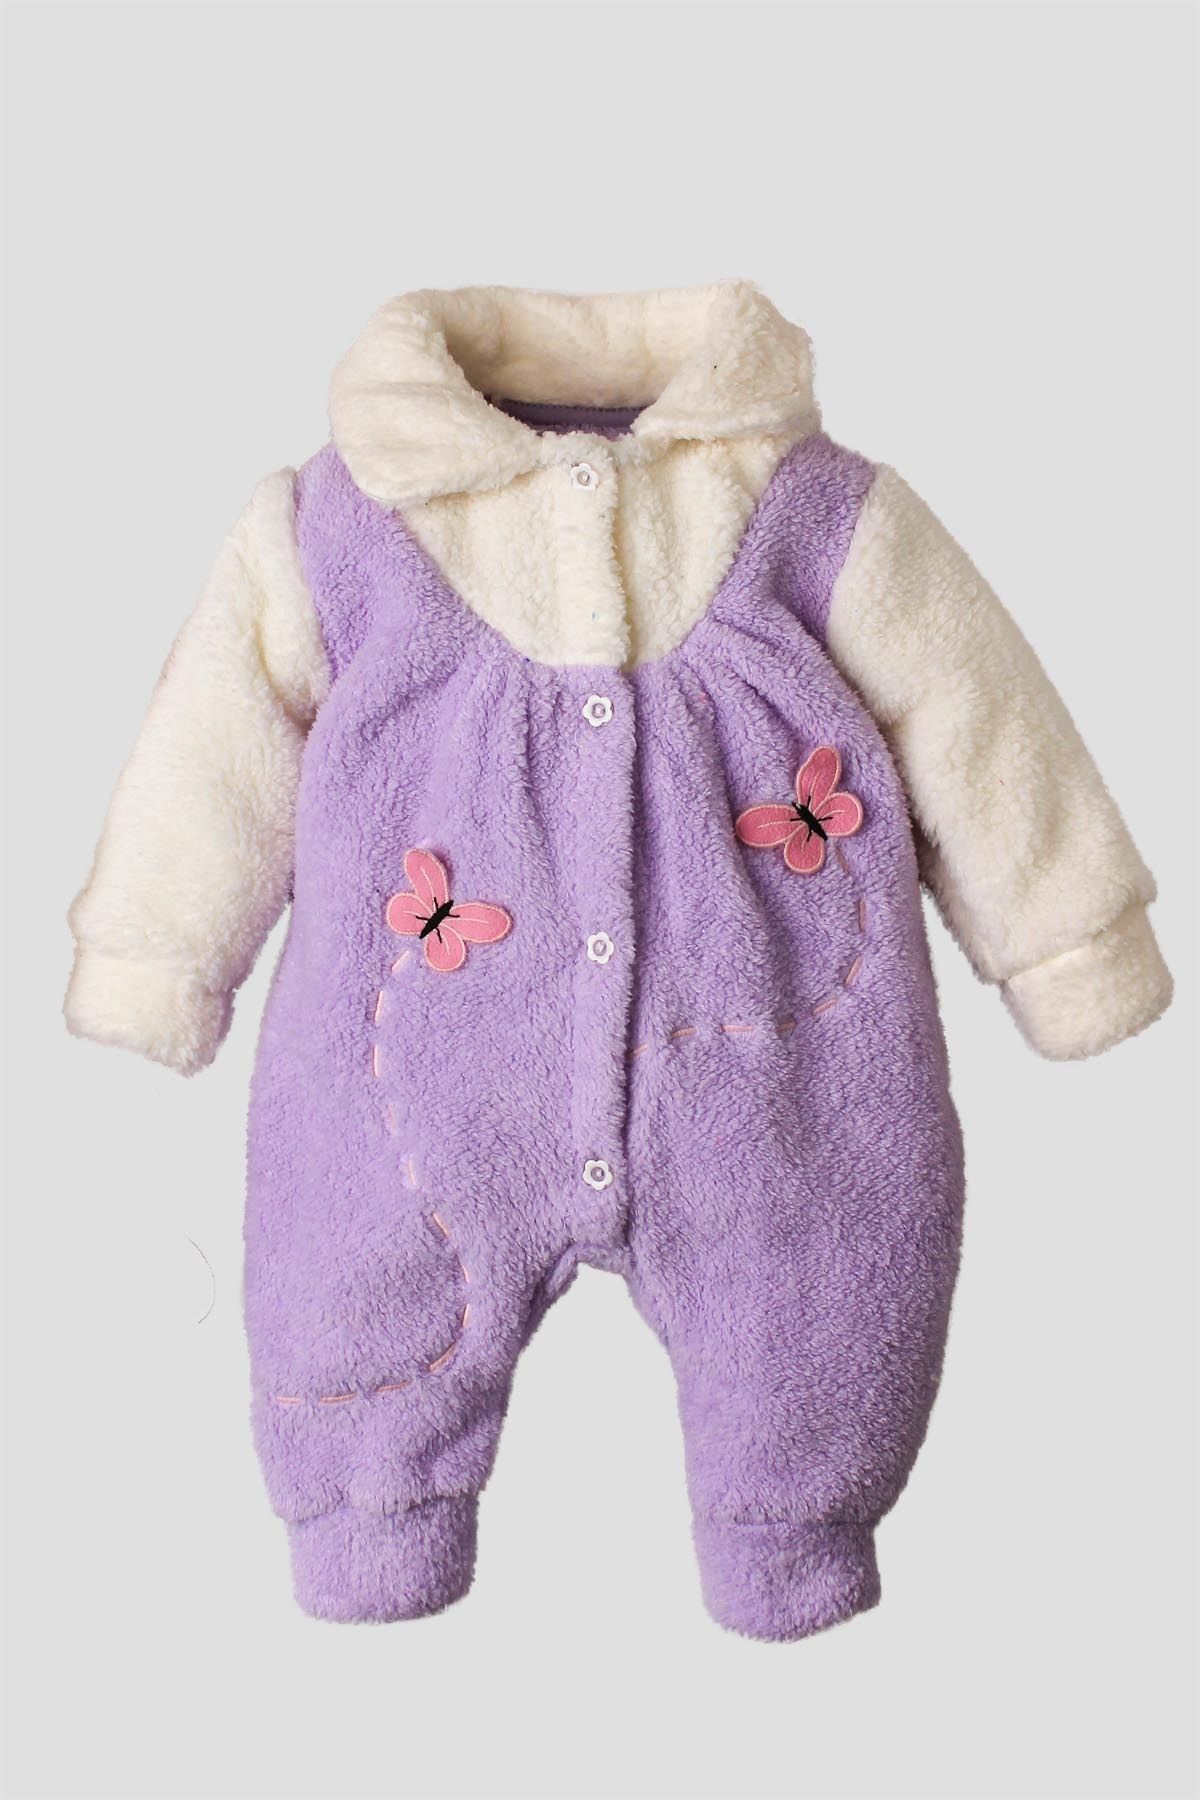 Kidex’s Baby Kışlık tatlı peluş welsoft tulum kız bebek tulum